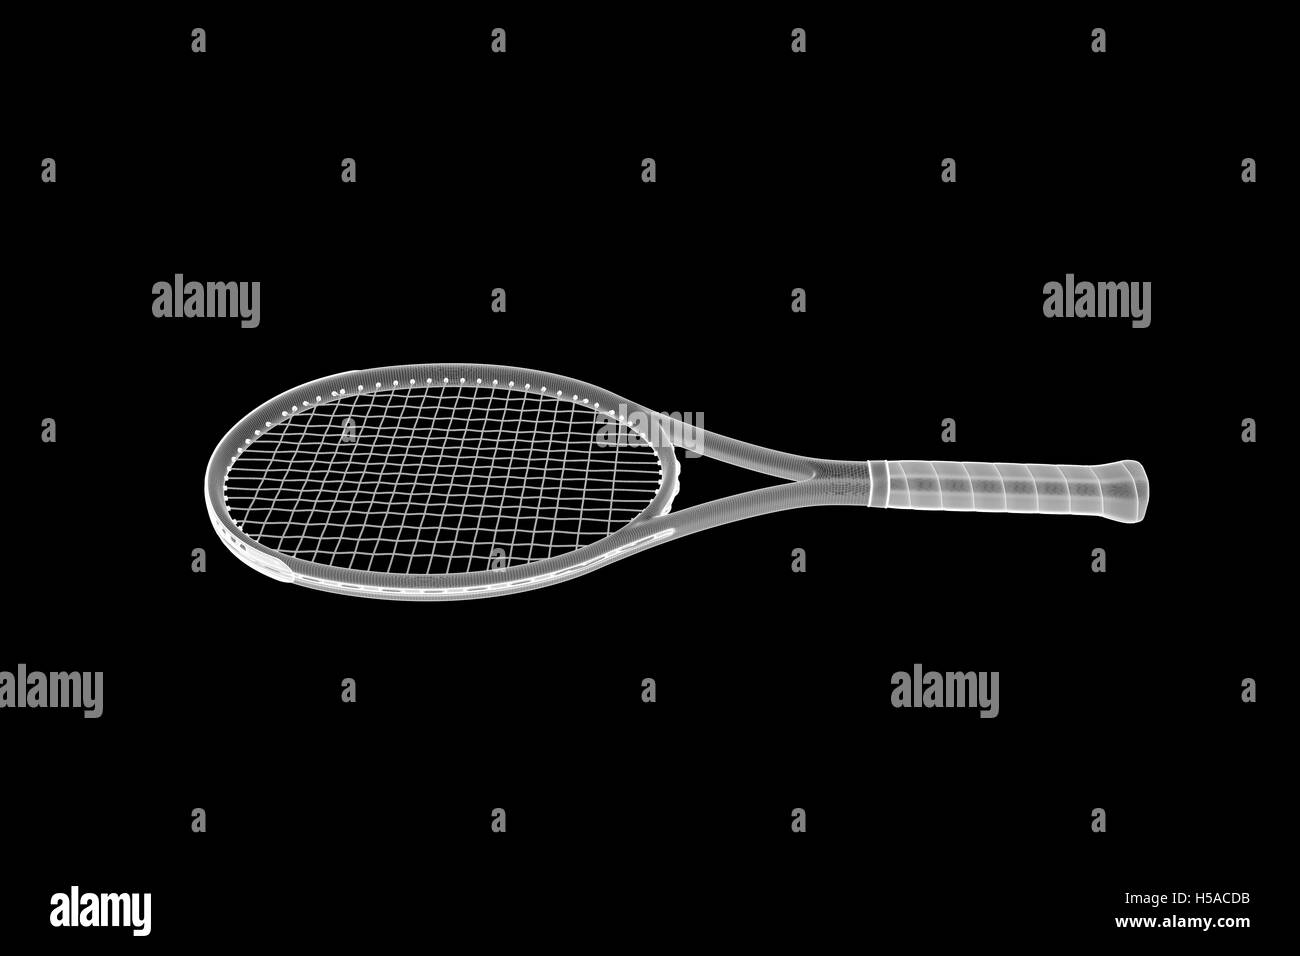 Raquette de Tennis en cuir style fil de fer. Rendu 3D de Nice Photo Stock -  Alamy